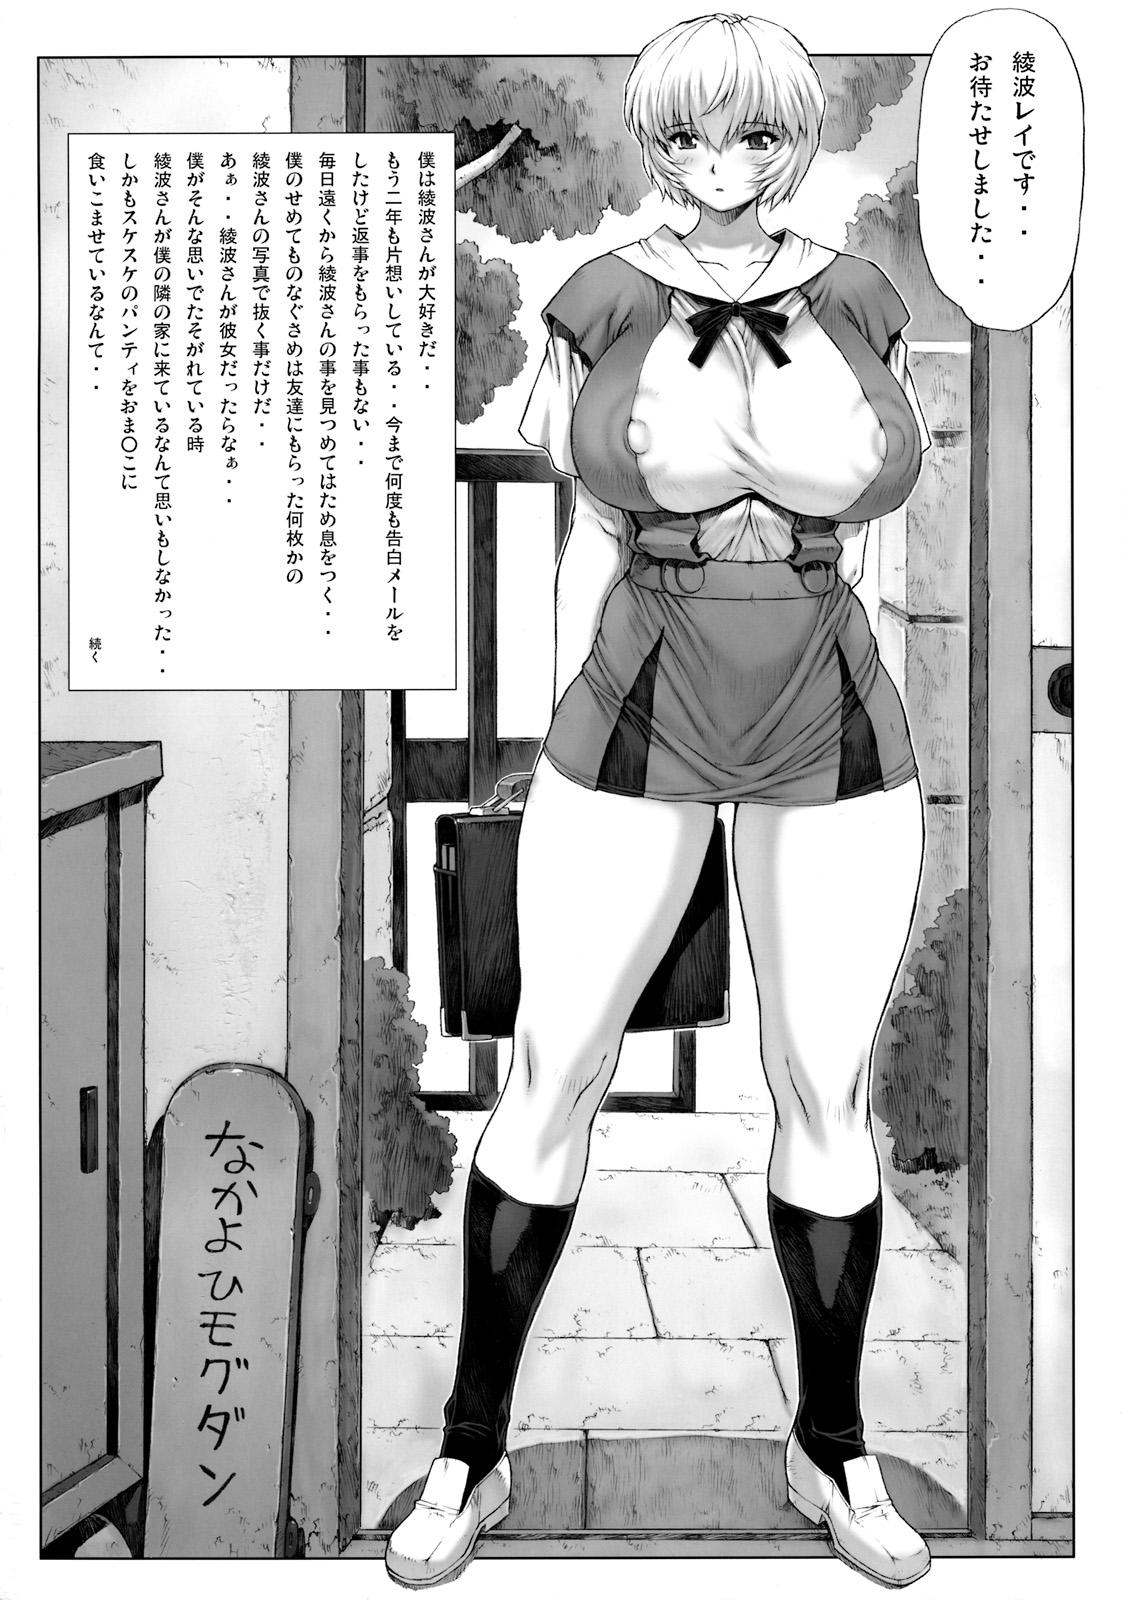 Horny Ayanami Vol.2 - Neon genesis evangelion Latin - Page 2